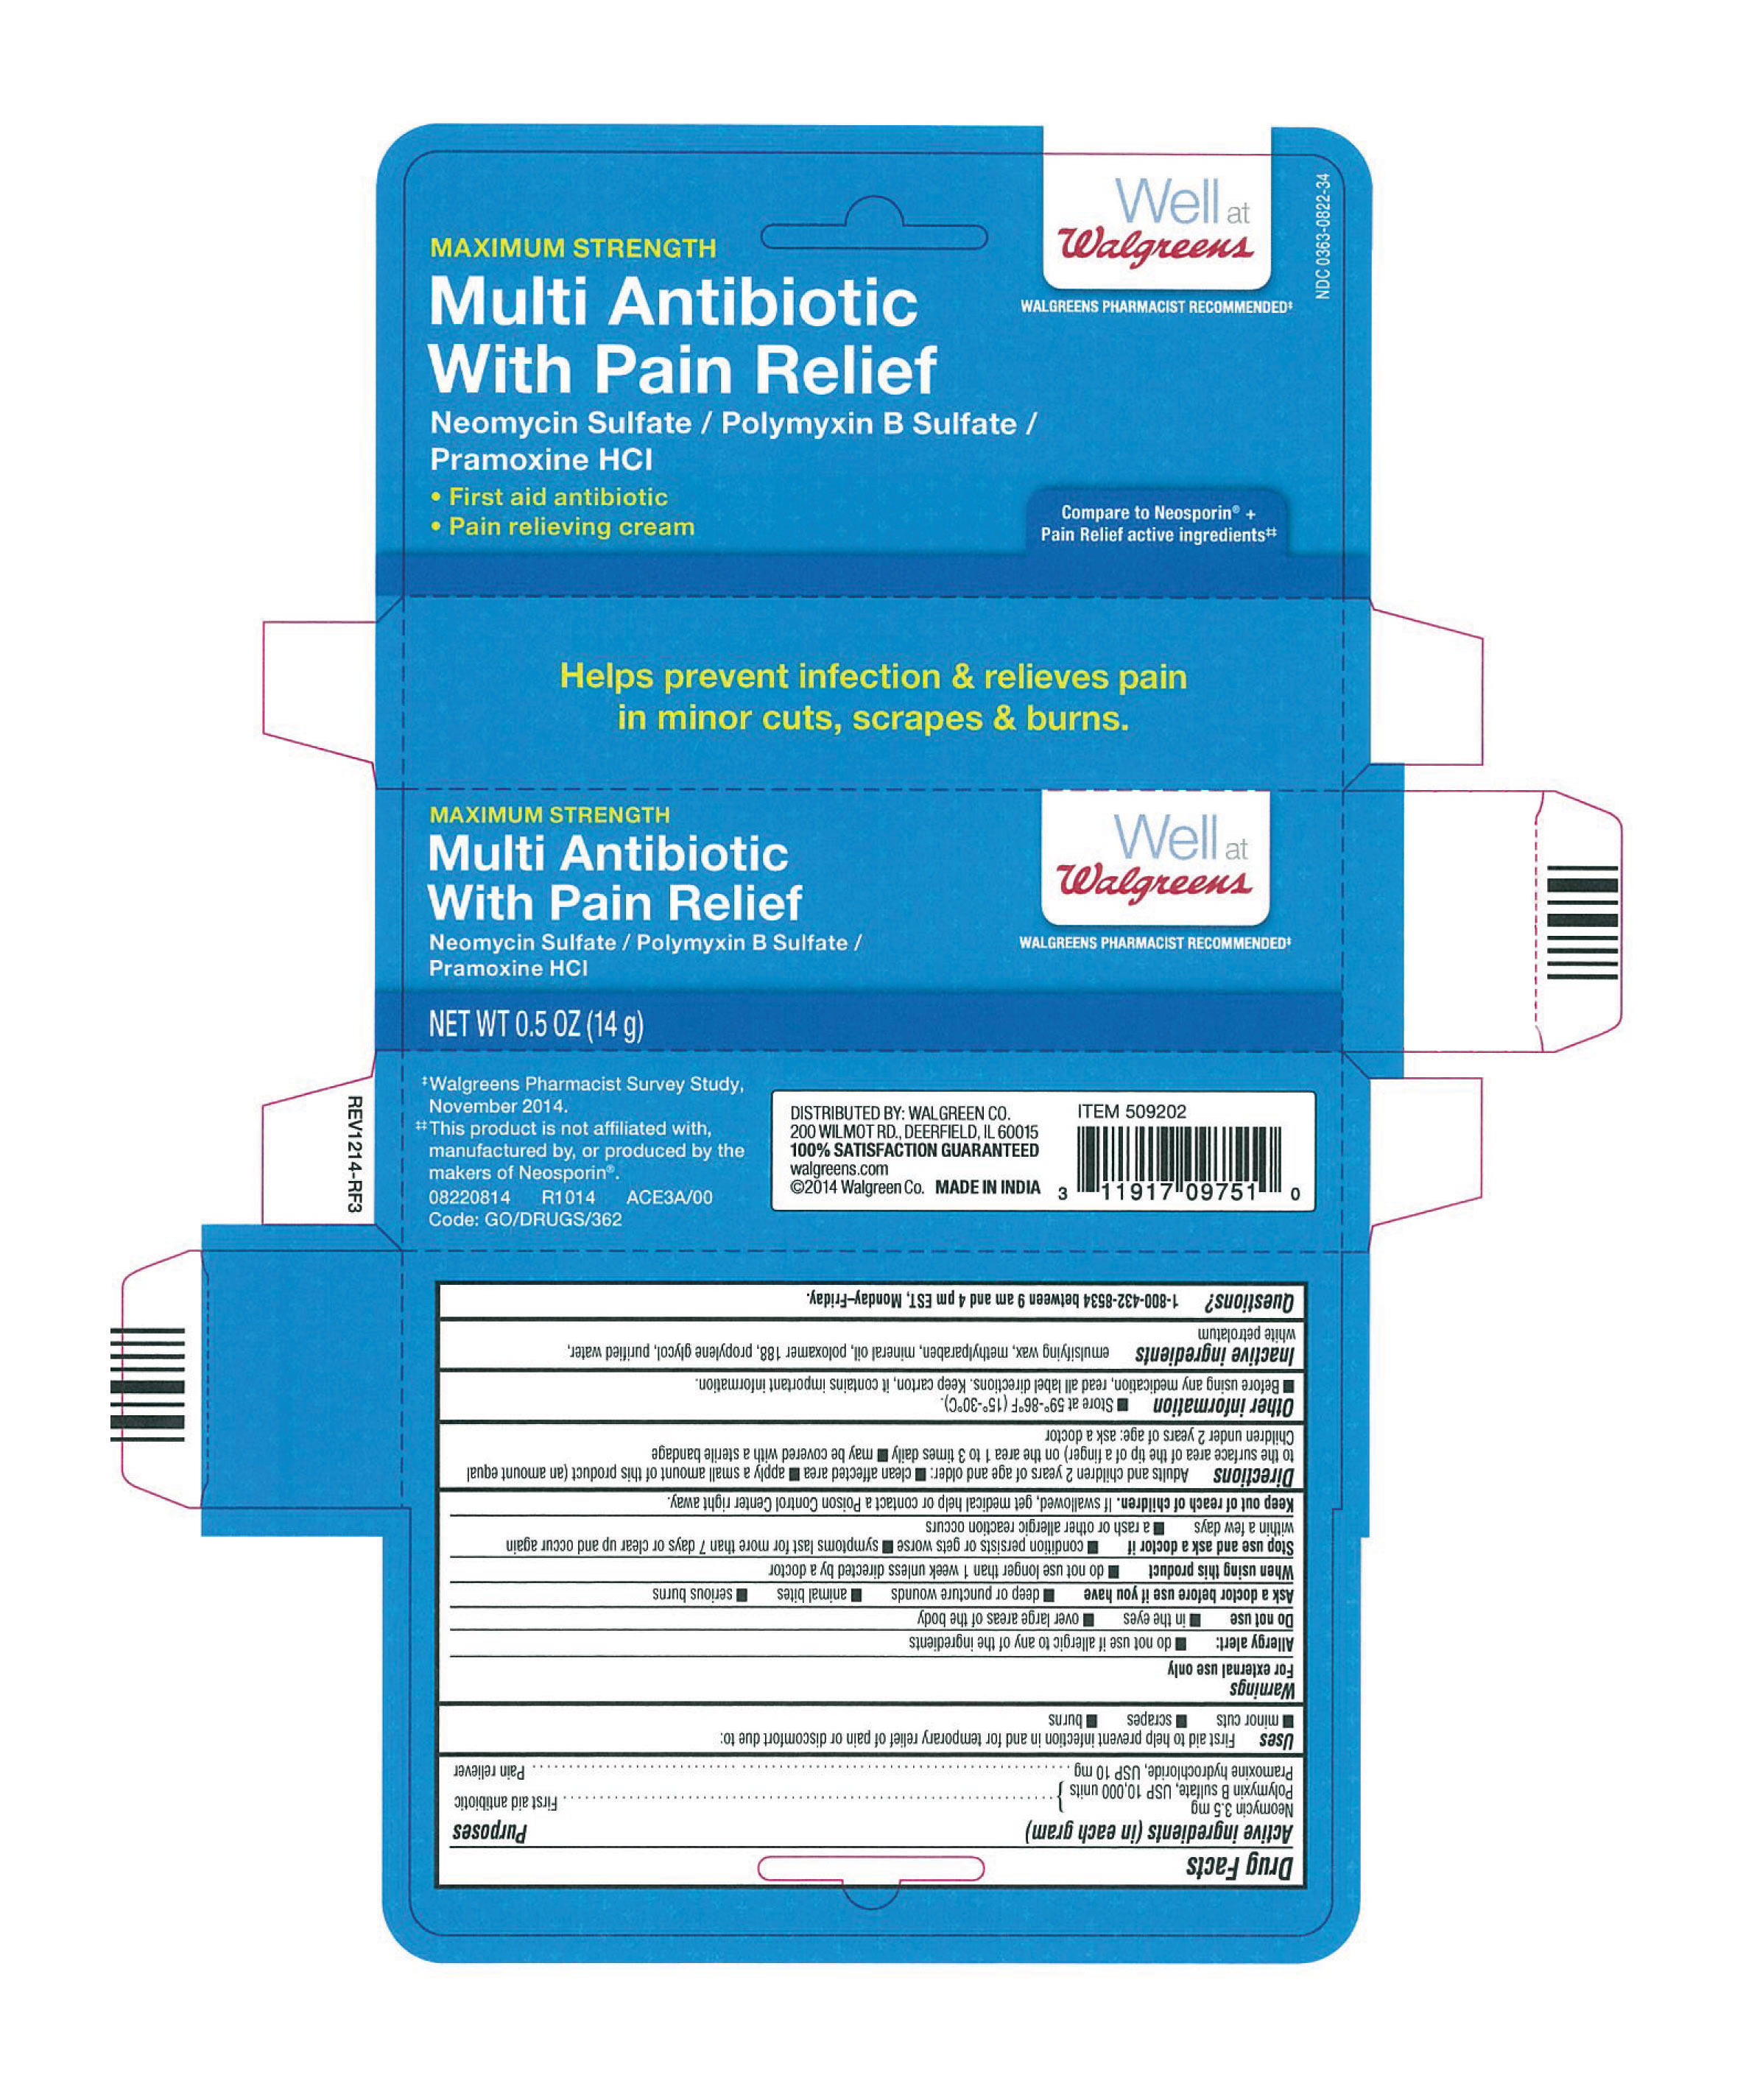 Multi Antibiotic with Pain Relief